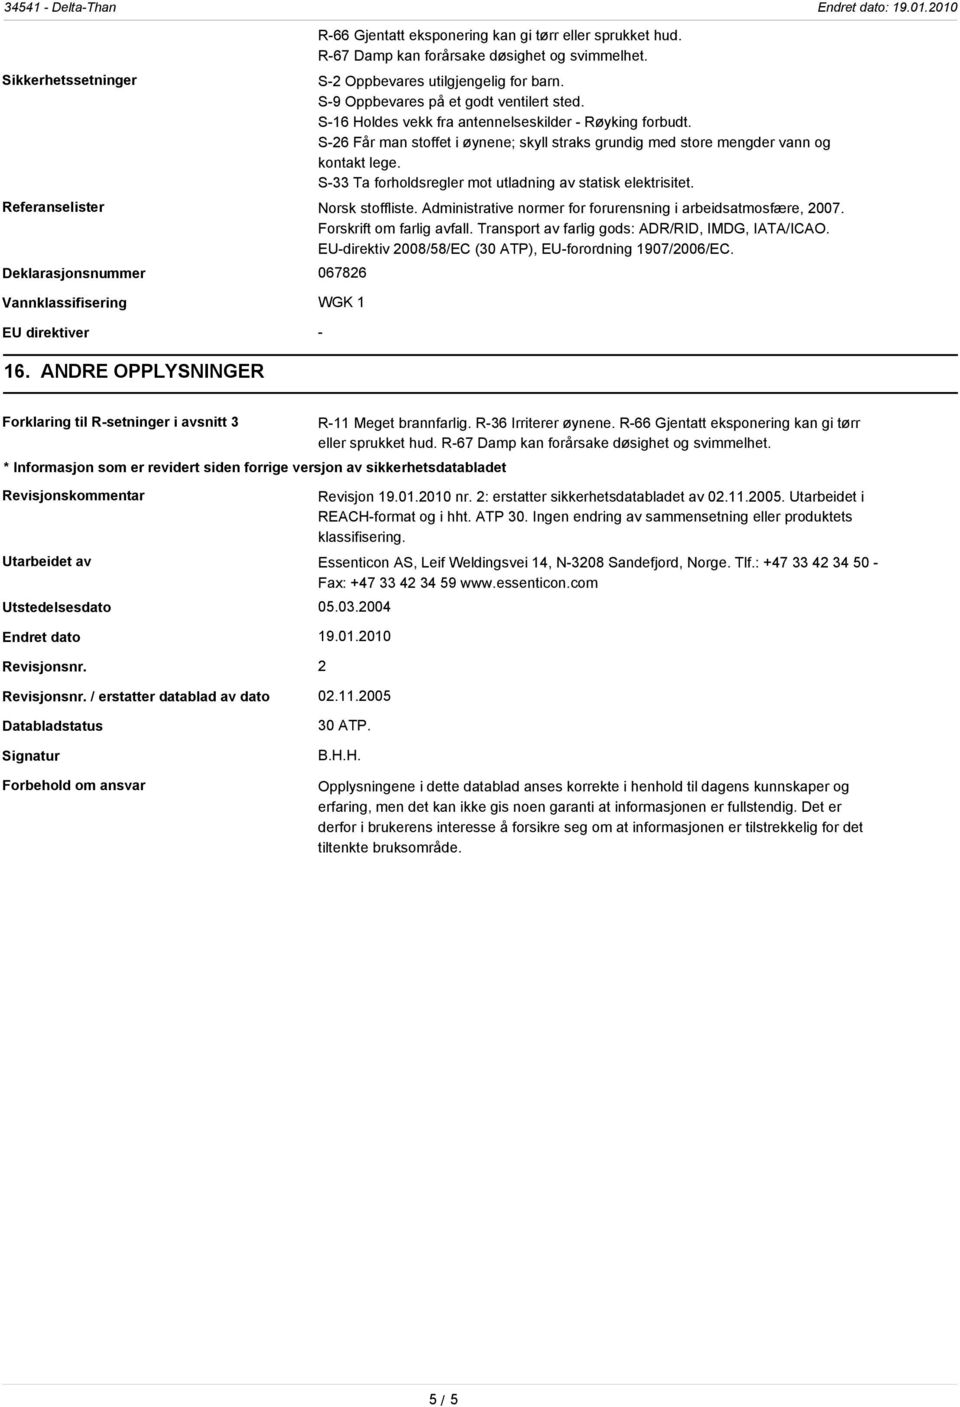 S-33 Ta forholdsregler mot utladning av statisk elektrisitet. Referanselister Norsk stoffliste. Administrative normer for forurensning i arbeidsatmosfære, 2007. Forskrift om farlig avfall.